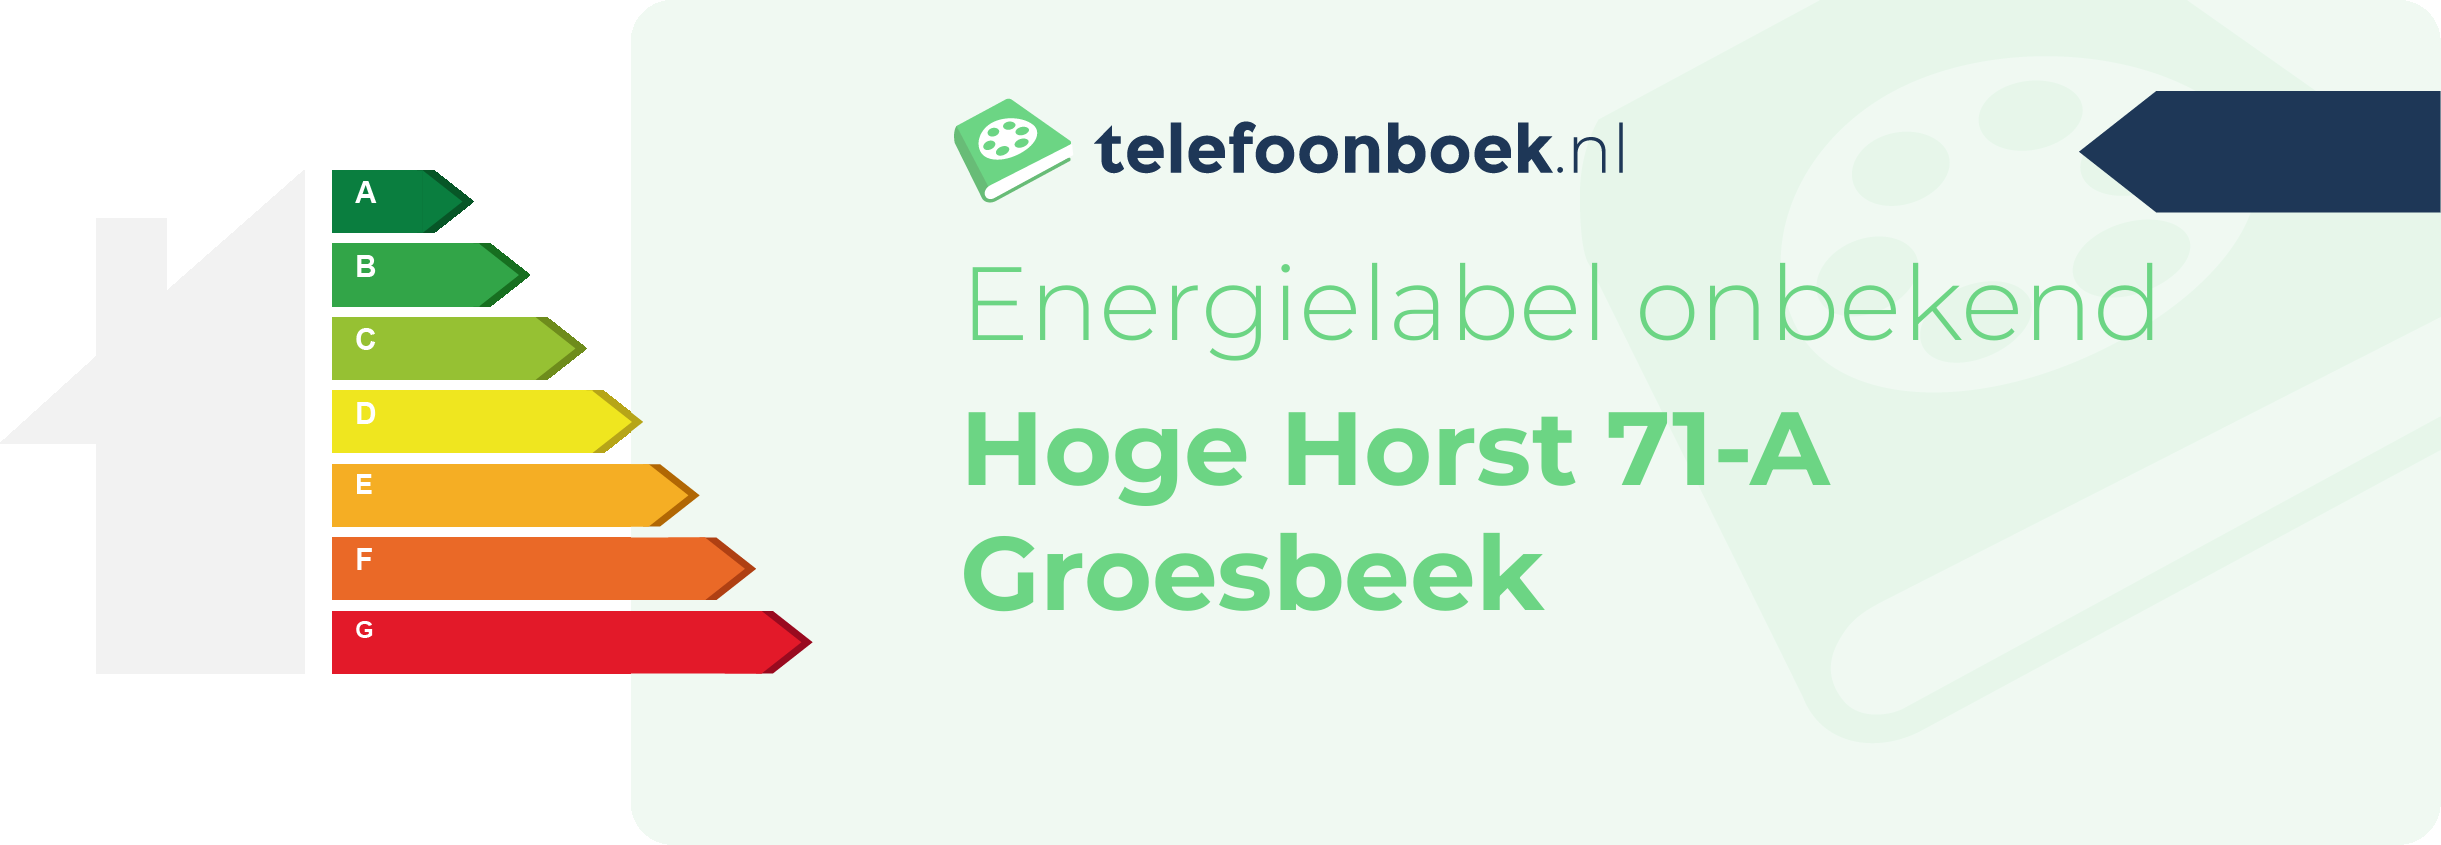 Energielabel Hoge Horst 71-A Groesbeek